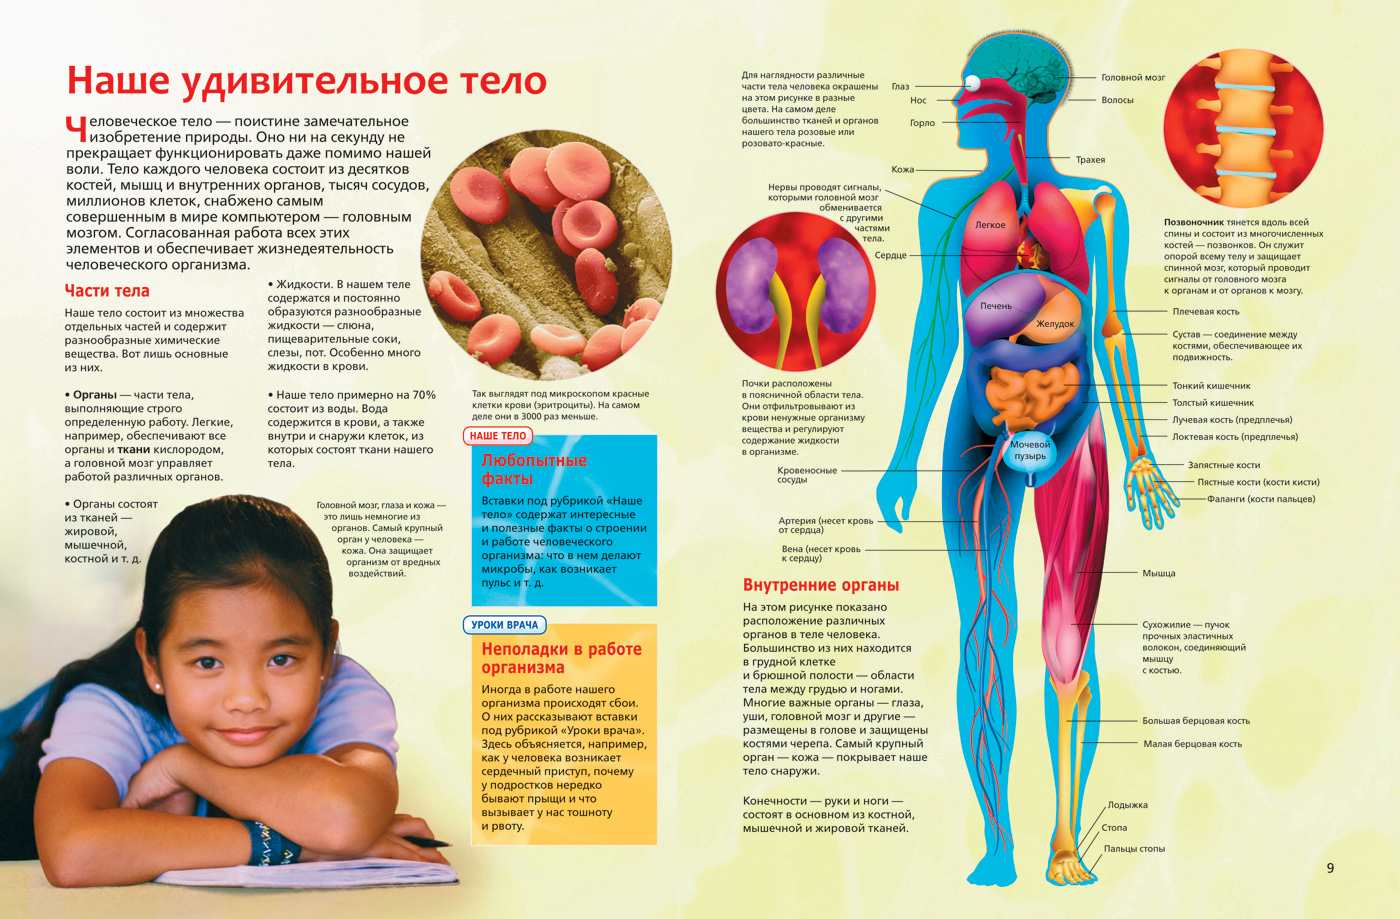 Организм не может функционировать. Интересные сведения о человеческом теле. Анатомия человека. Интересные факты об органах человека. Анатомия человека для детей.